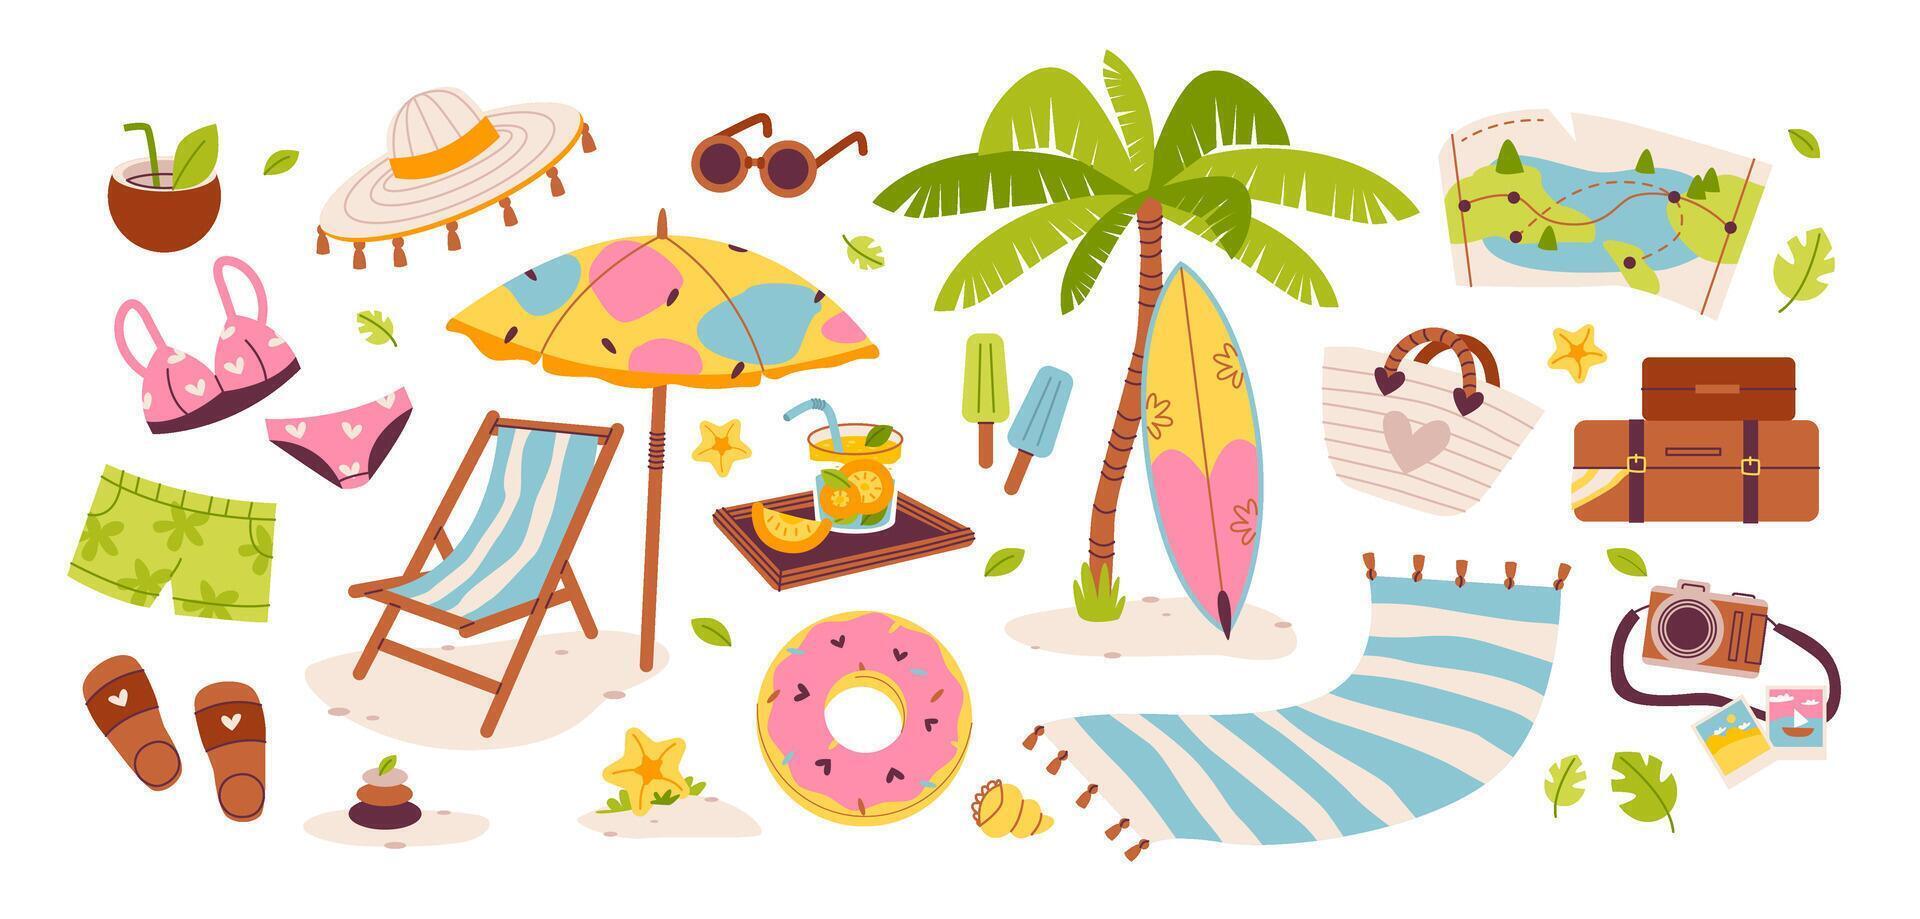 zomer reeks van schattig elementen, getrokken in een minimalistische stijl. vlak vector illustratie. zomertijd en strand pictogrammen